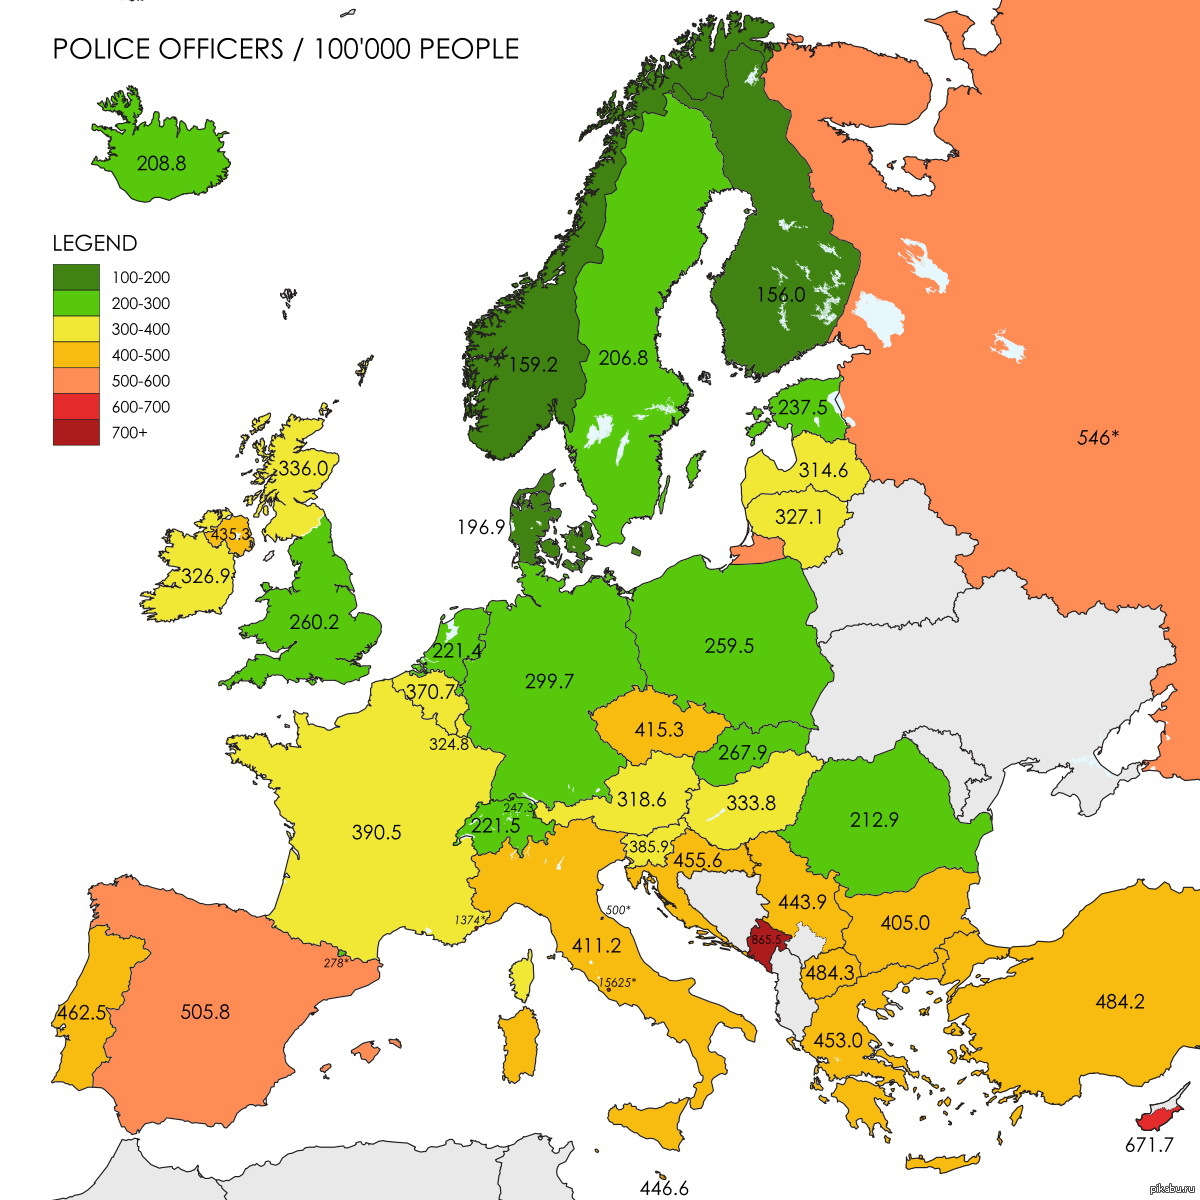 Количество населения стран европы. Население Европы. Количество полицейских в странах Европы. Численность населения Европы. Карта Европы с численностью населения.